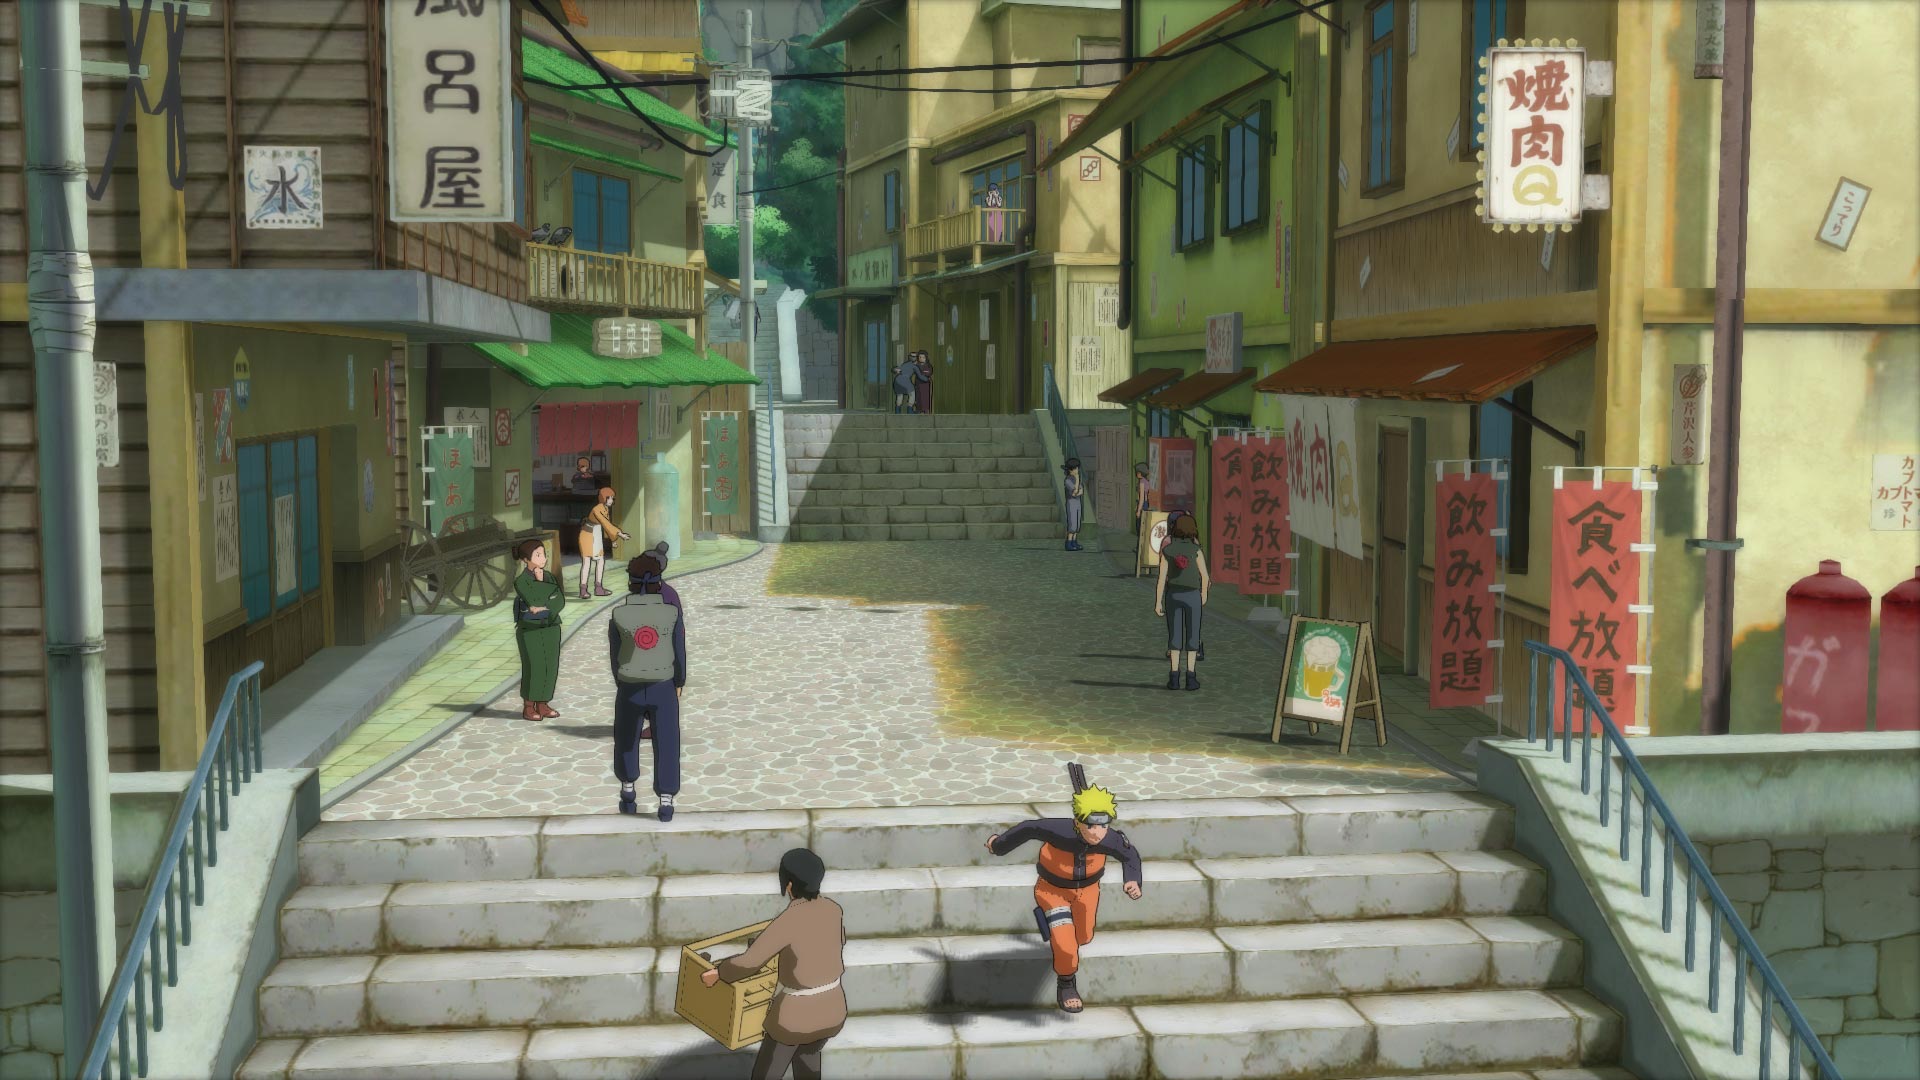 Jogo Naruto Shippuden Ultimate Ninja Storm 4 PS4 Bandai Namco com o Melhor  Preço é no Zoom